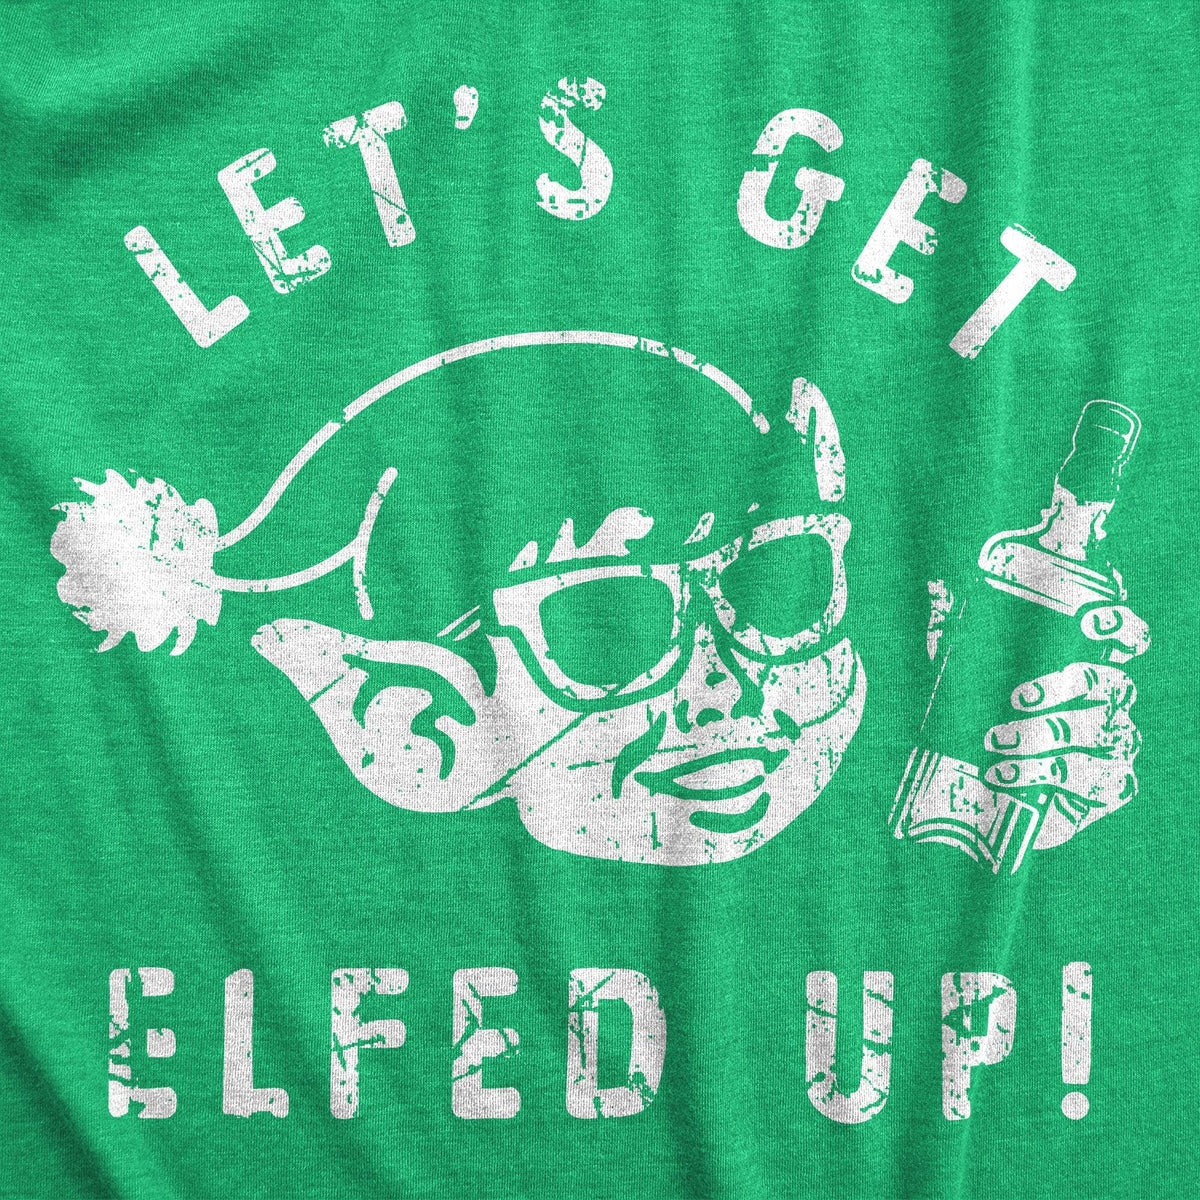 Lets Get Elfed Up Men&#39;s Tshirt  -  Crazy Dog T-Shirts